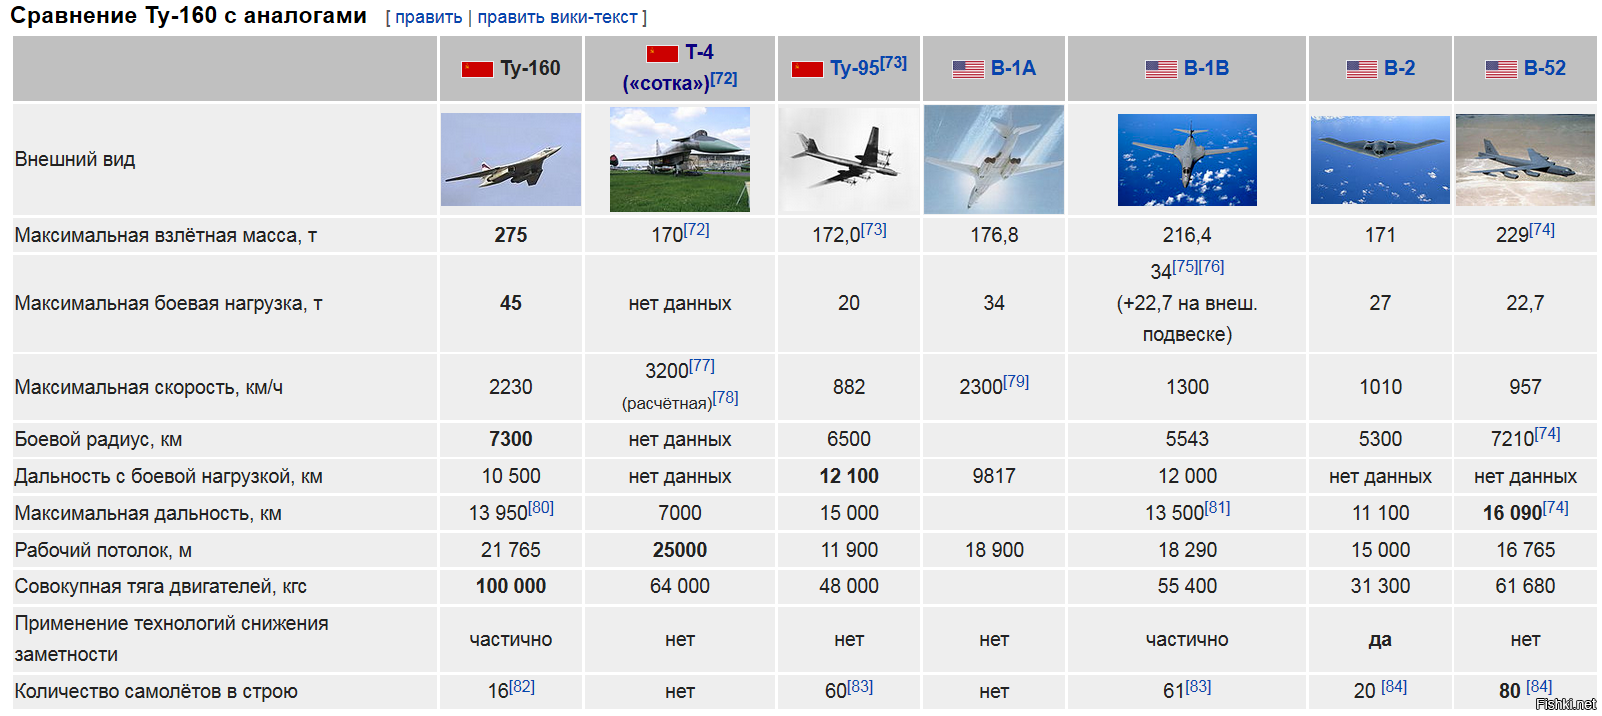 Сколько у россии самолетов ту 22